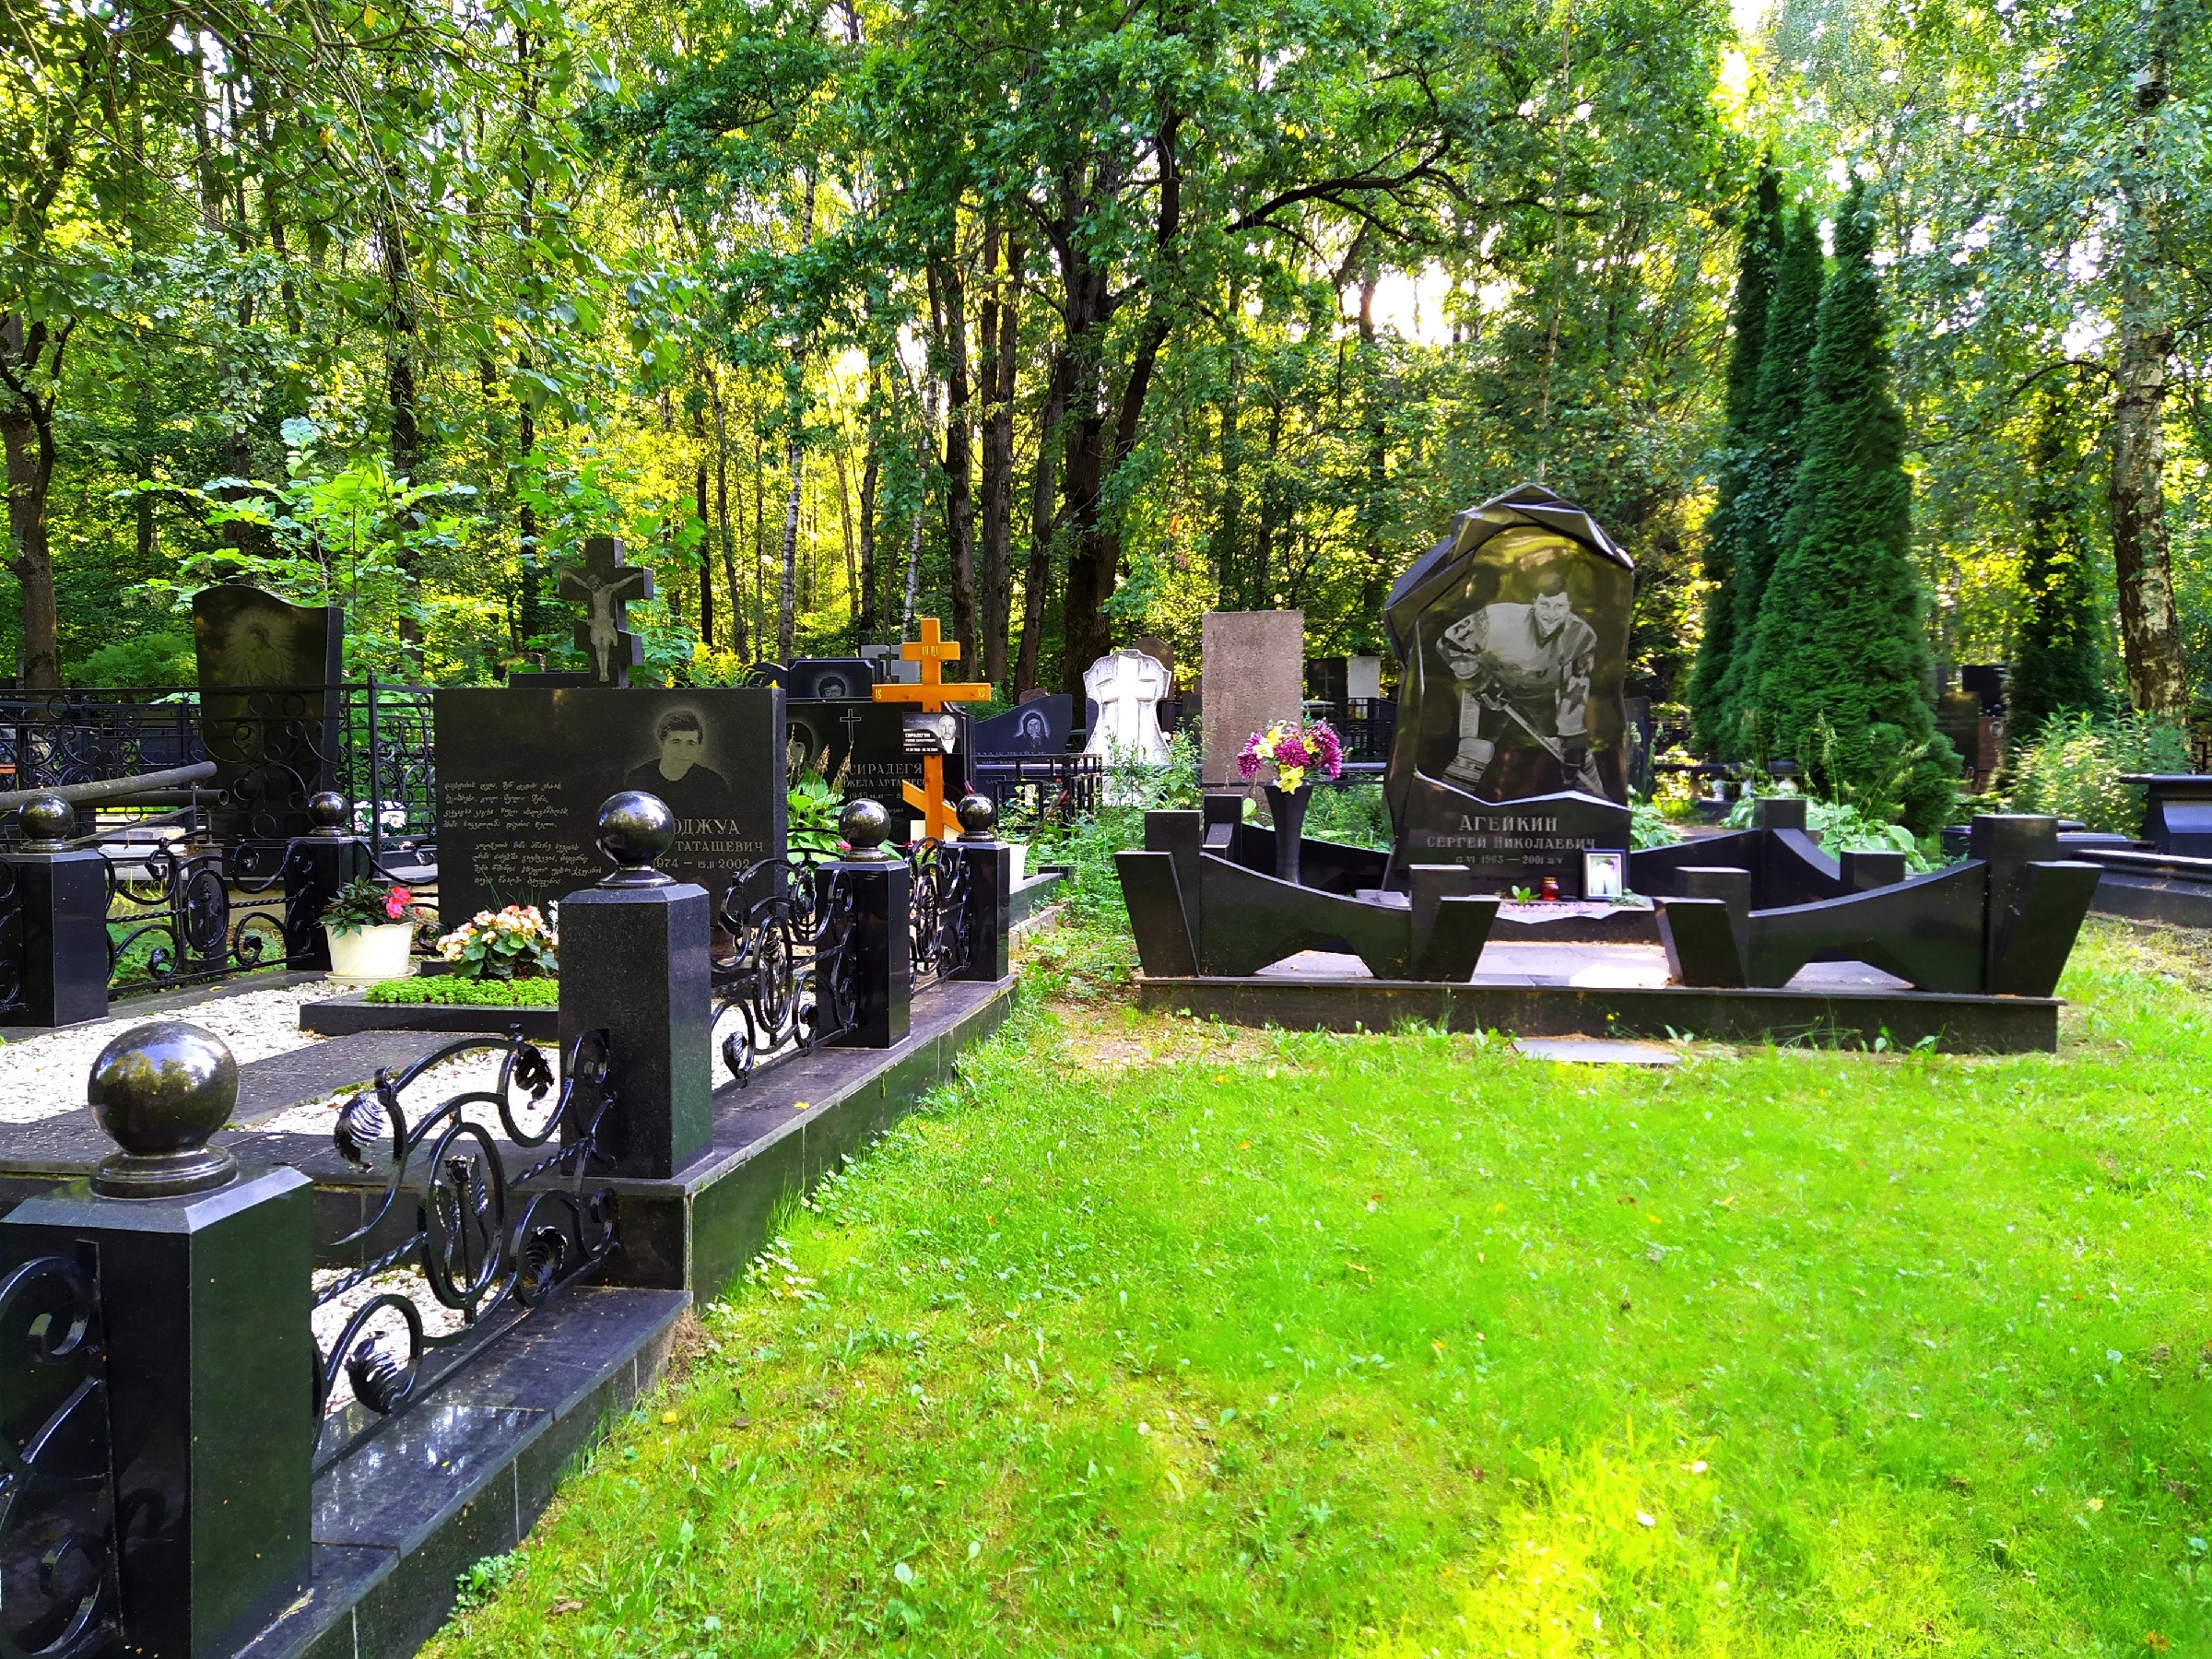 Могила вольфа мессинга на востряковском кладбище фото